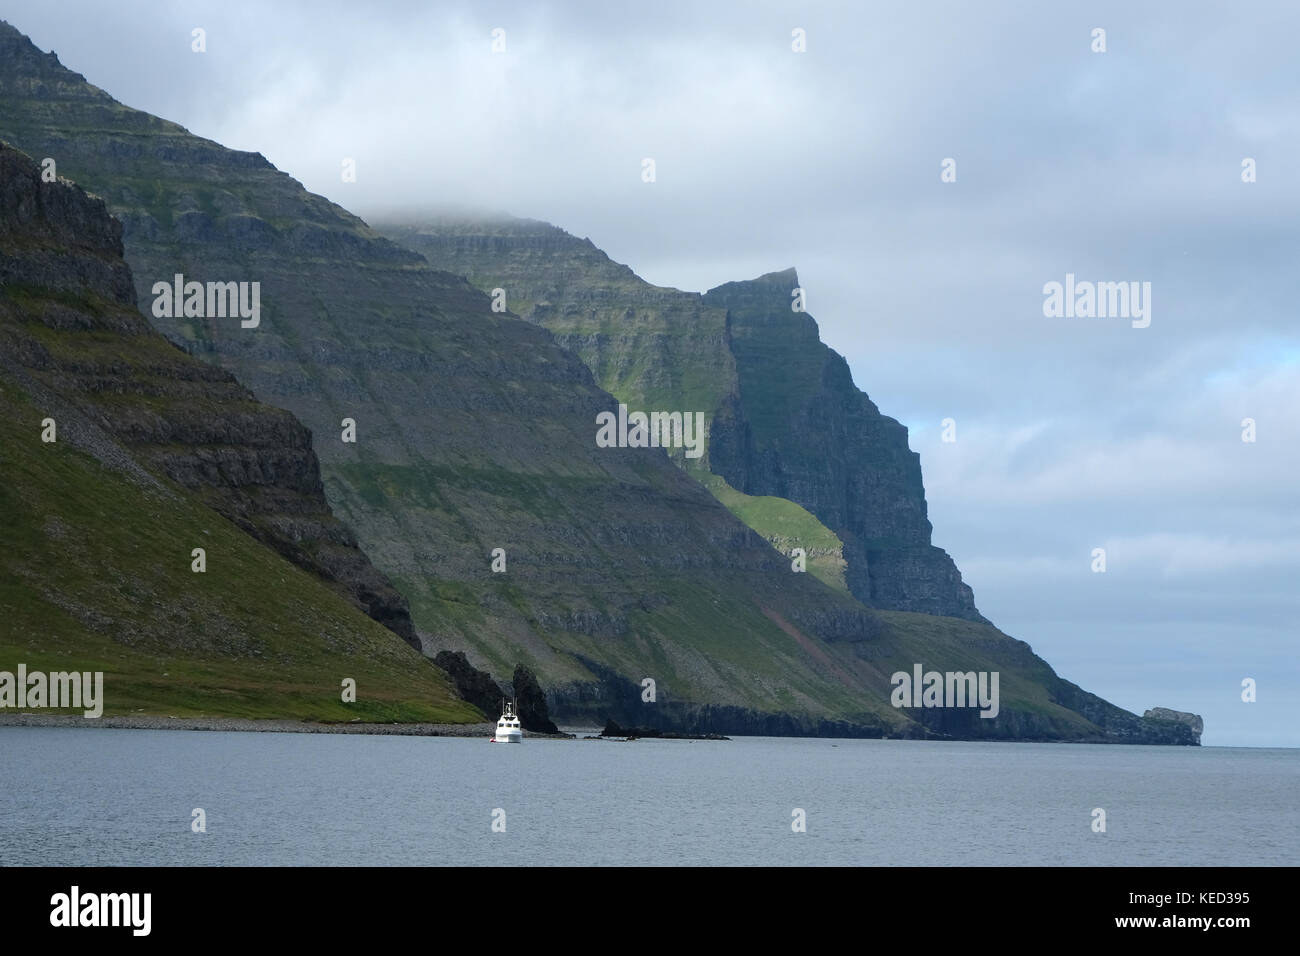 Barco turístico blanco en el popular destino turístico empequeñecidas por grandes montañas verdes y picos en el fondo, la reserva natural de hornstrandir, Islandia Foto de stock